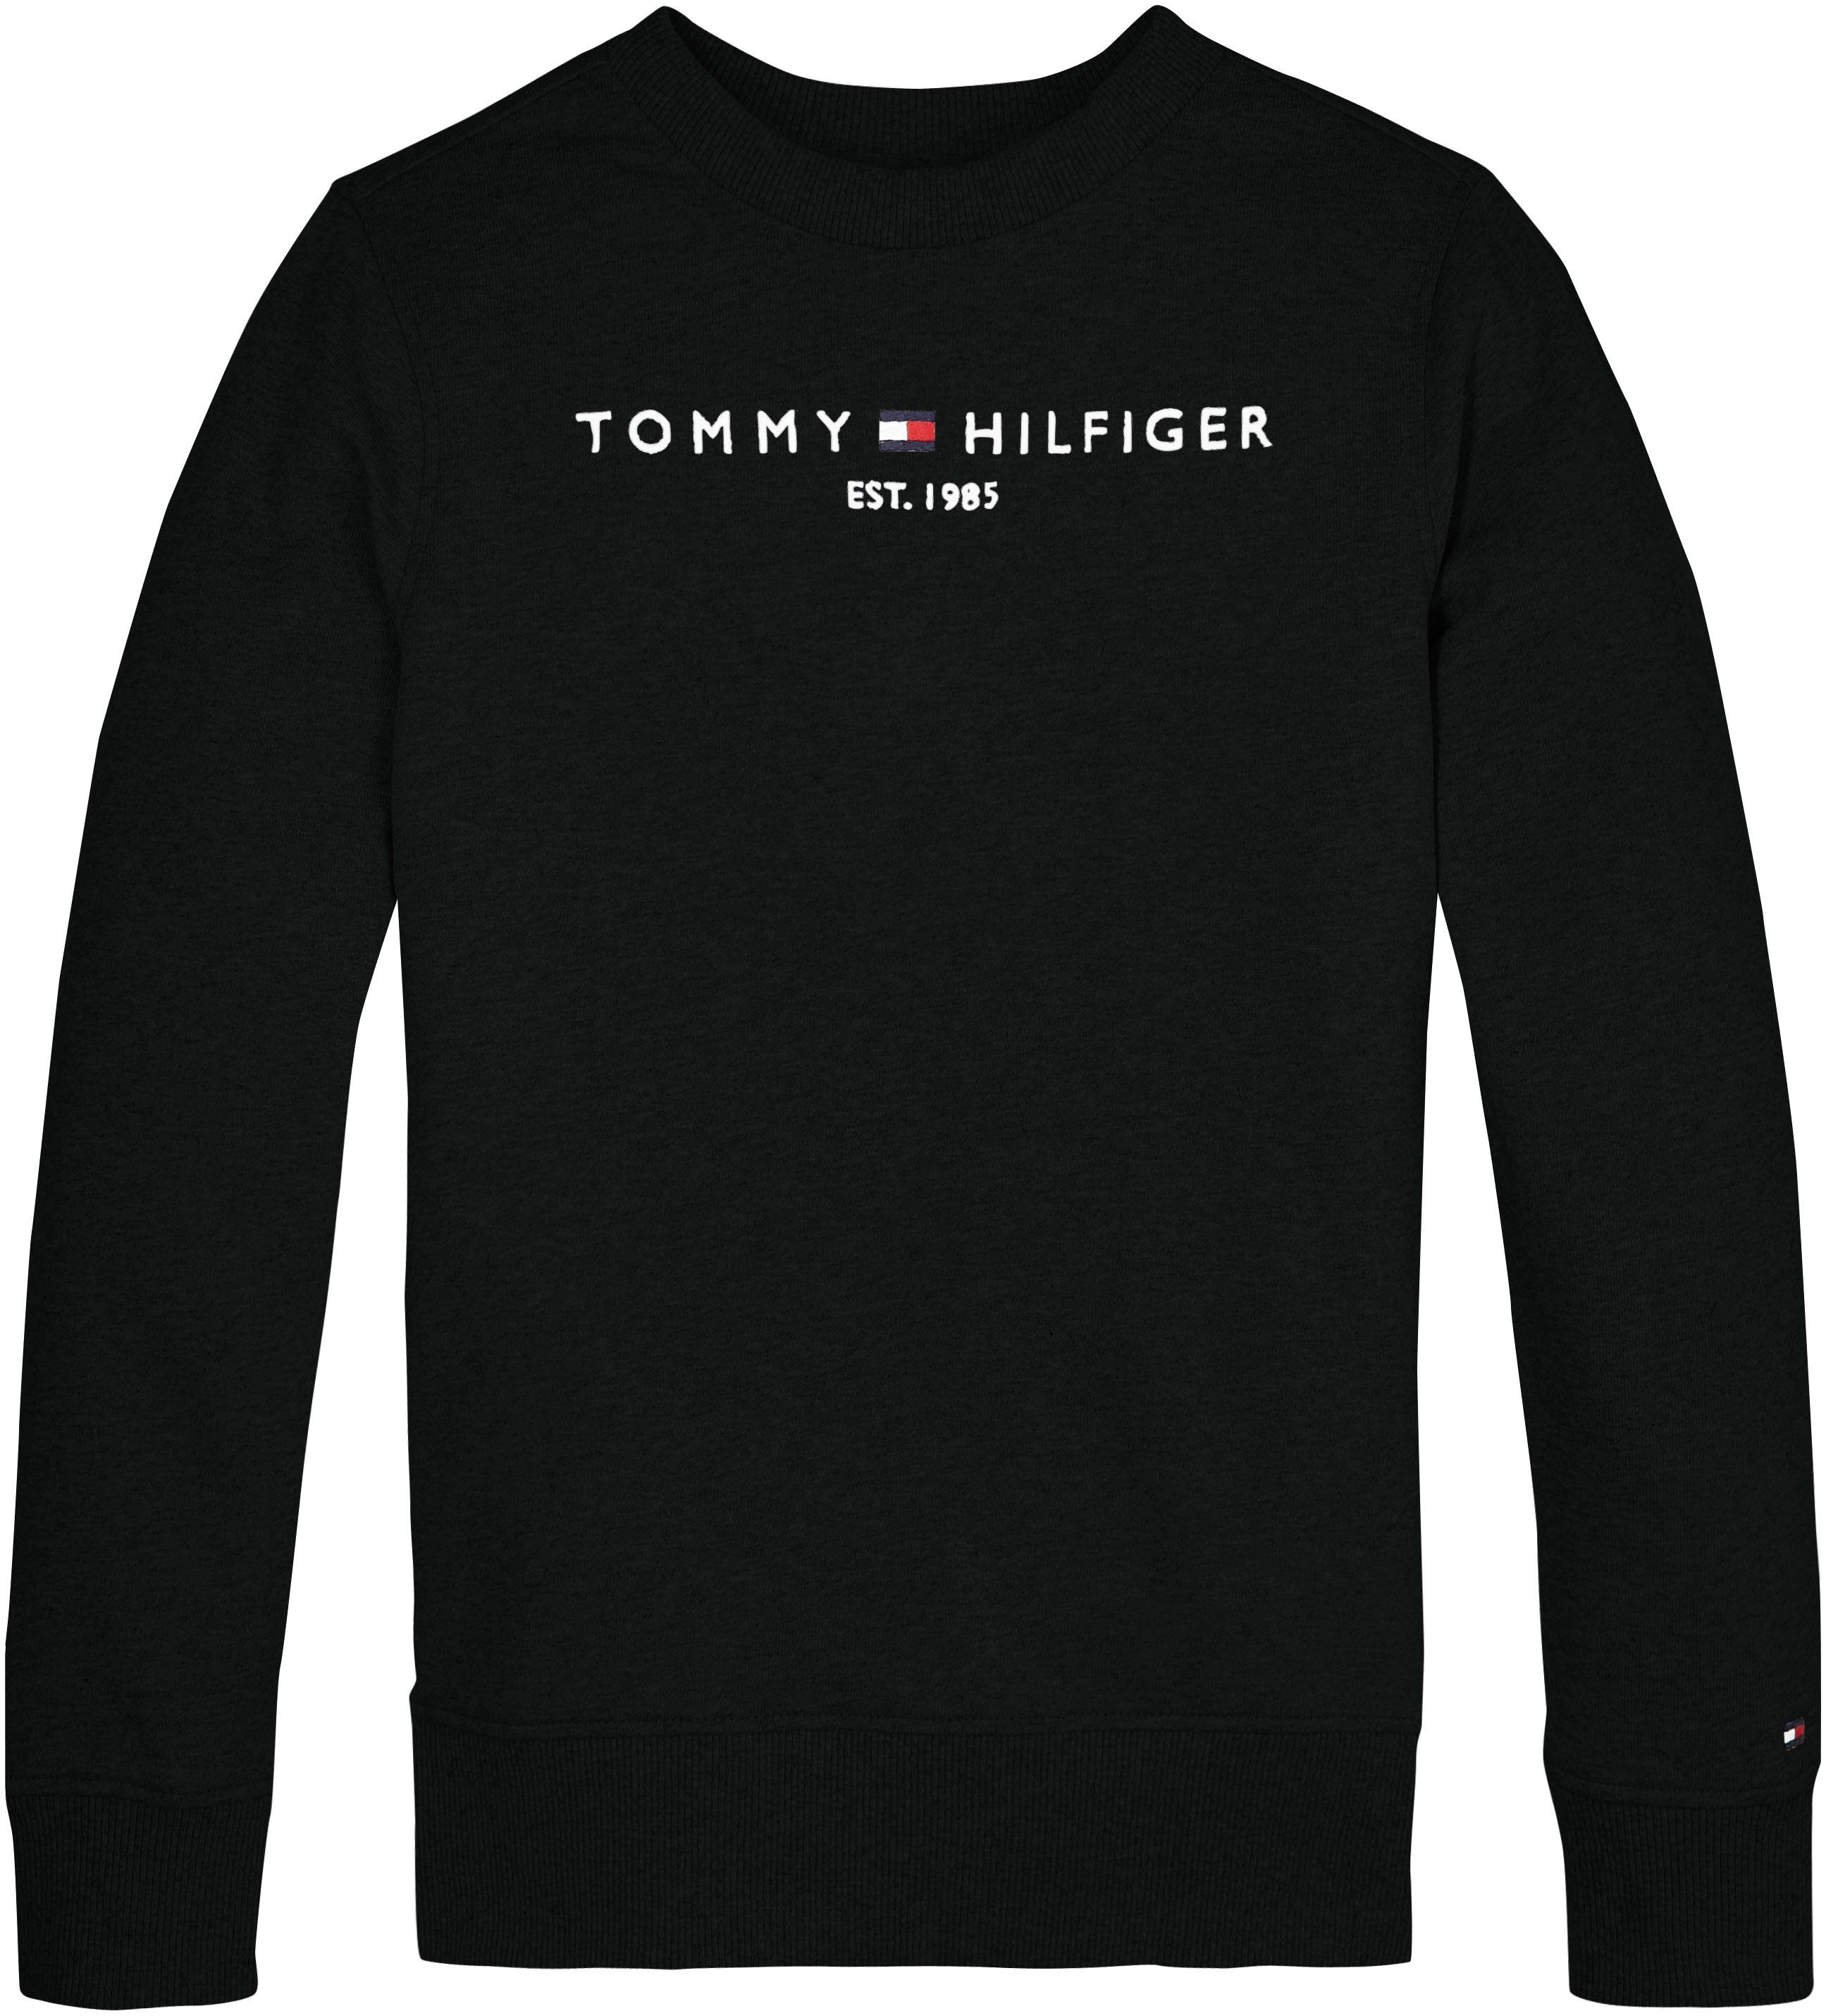 Tommy Hilfiger Sweatshirt Junior MiniMe,für und SWEATSHIRT Kids Kinder Mädchen Jungen ESSENTIAL